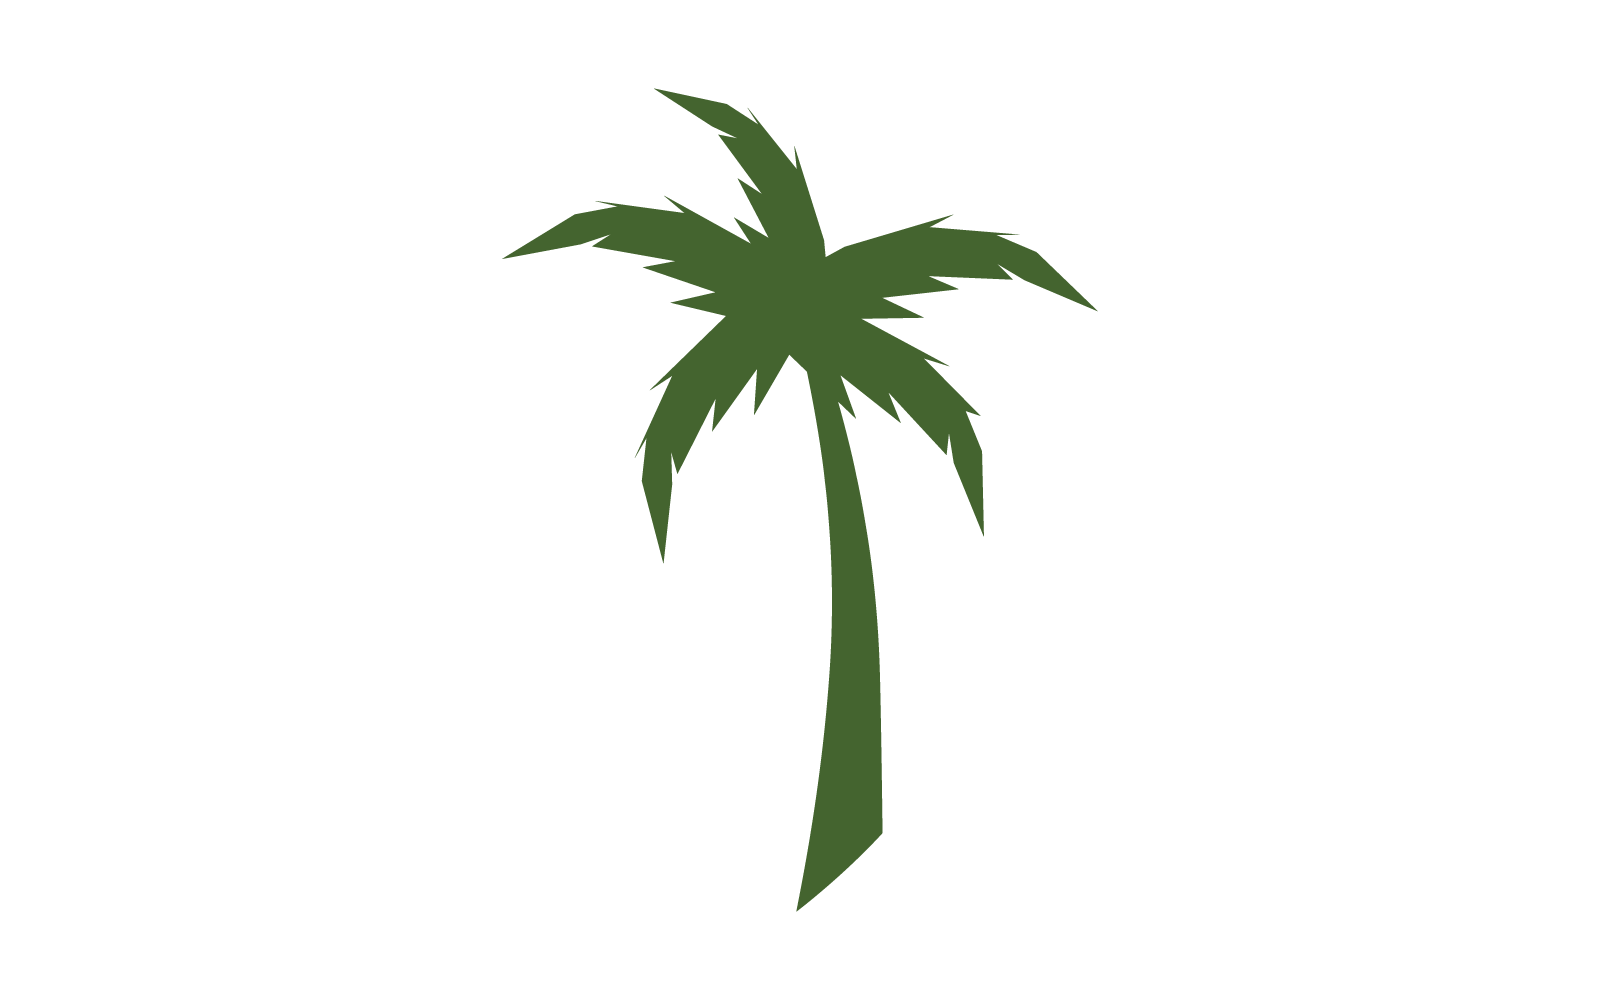 Palm tree leaf illustration logo design template